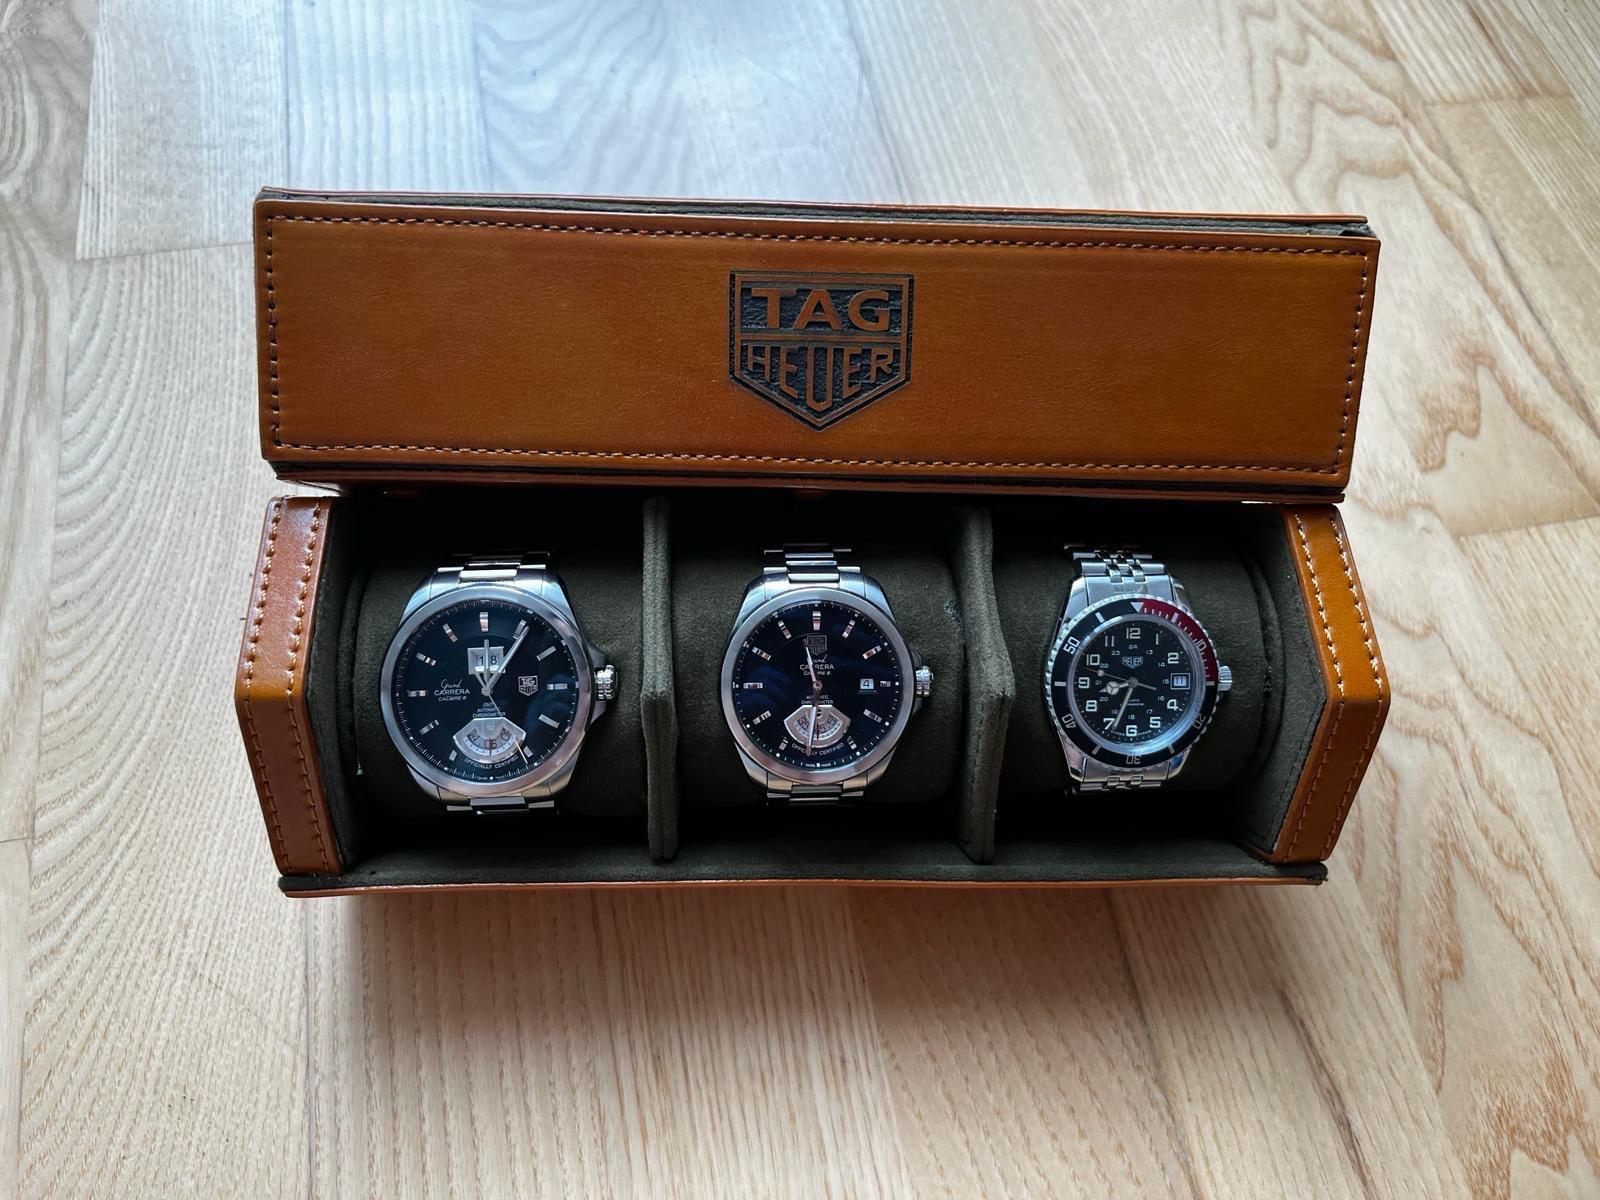 Sada hodiniek Tag Heuer s krabicou, katalógmi a príslušenstvom - Šperky a hodinky